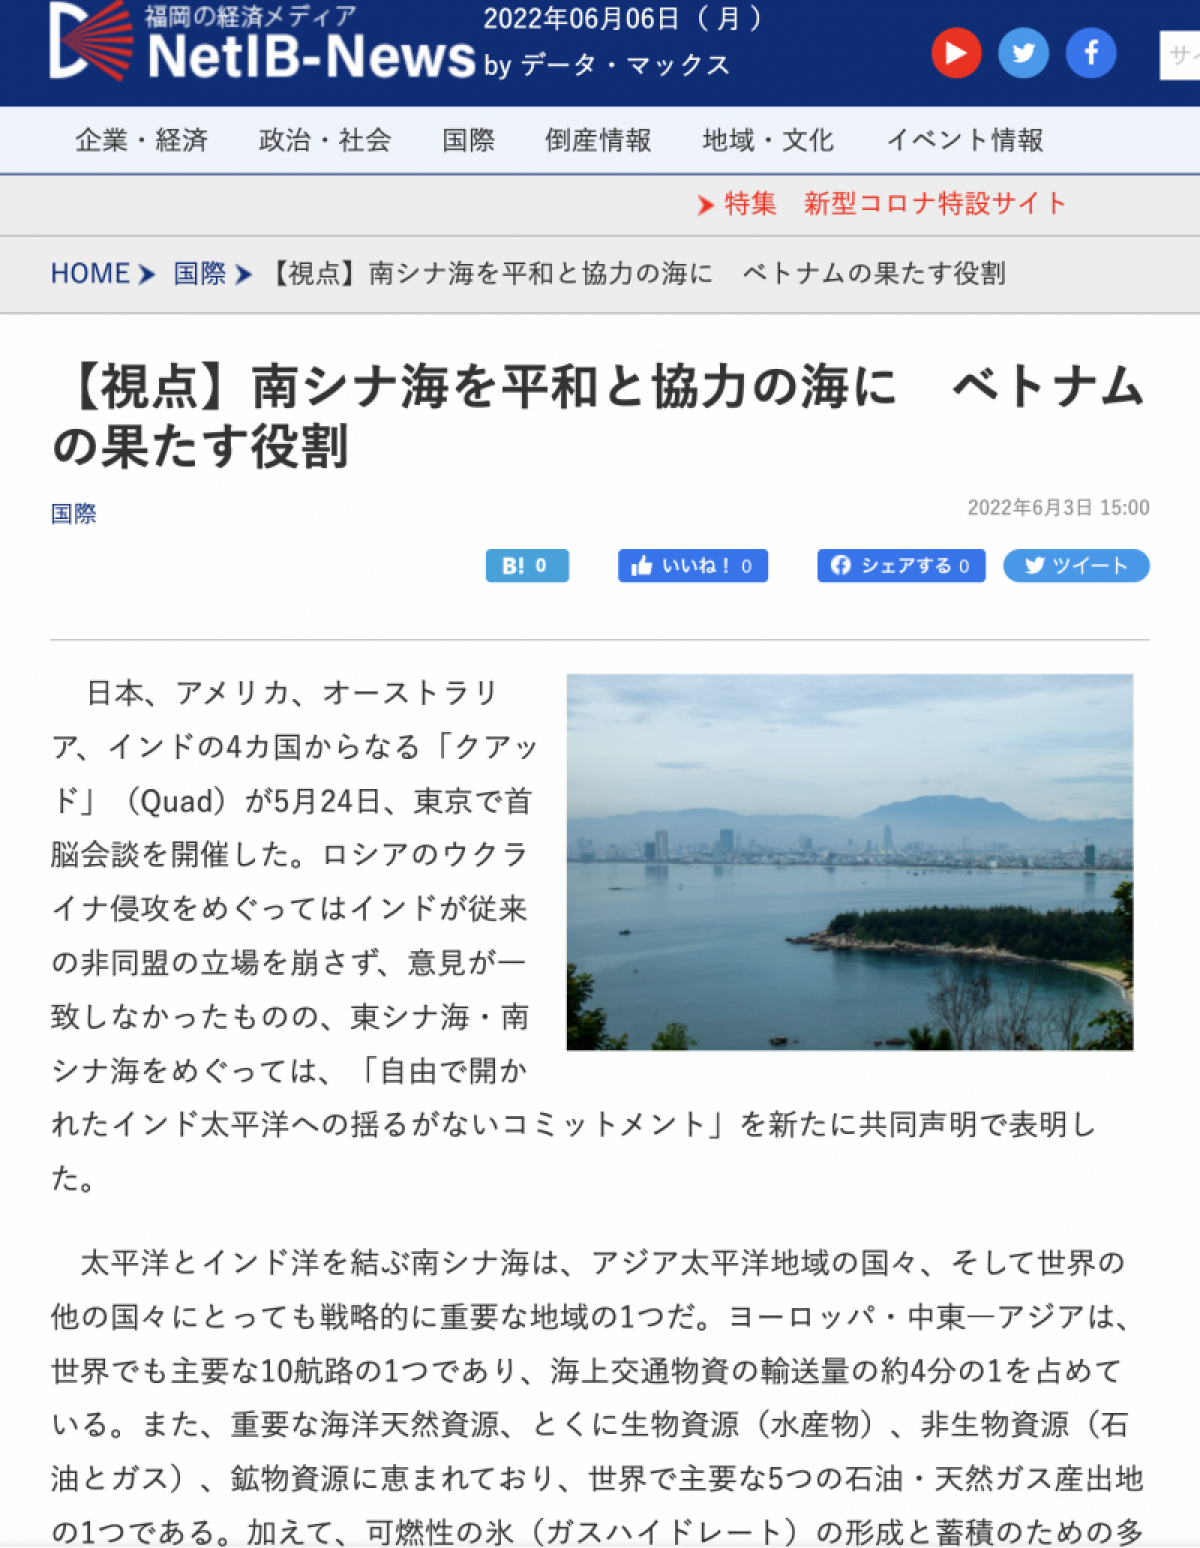 Японская газета высоко оценила роль Вьетнама в превращении Восточного моря в морской район мира и сотрудничества